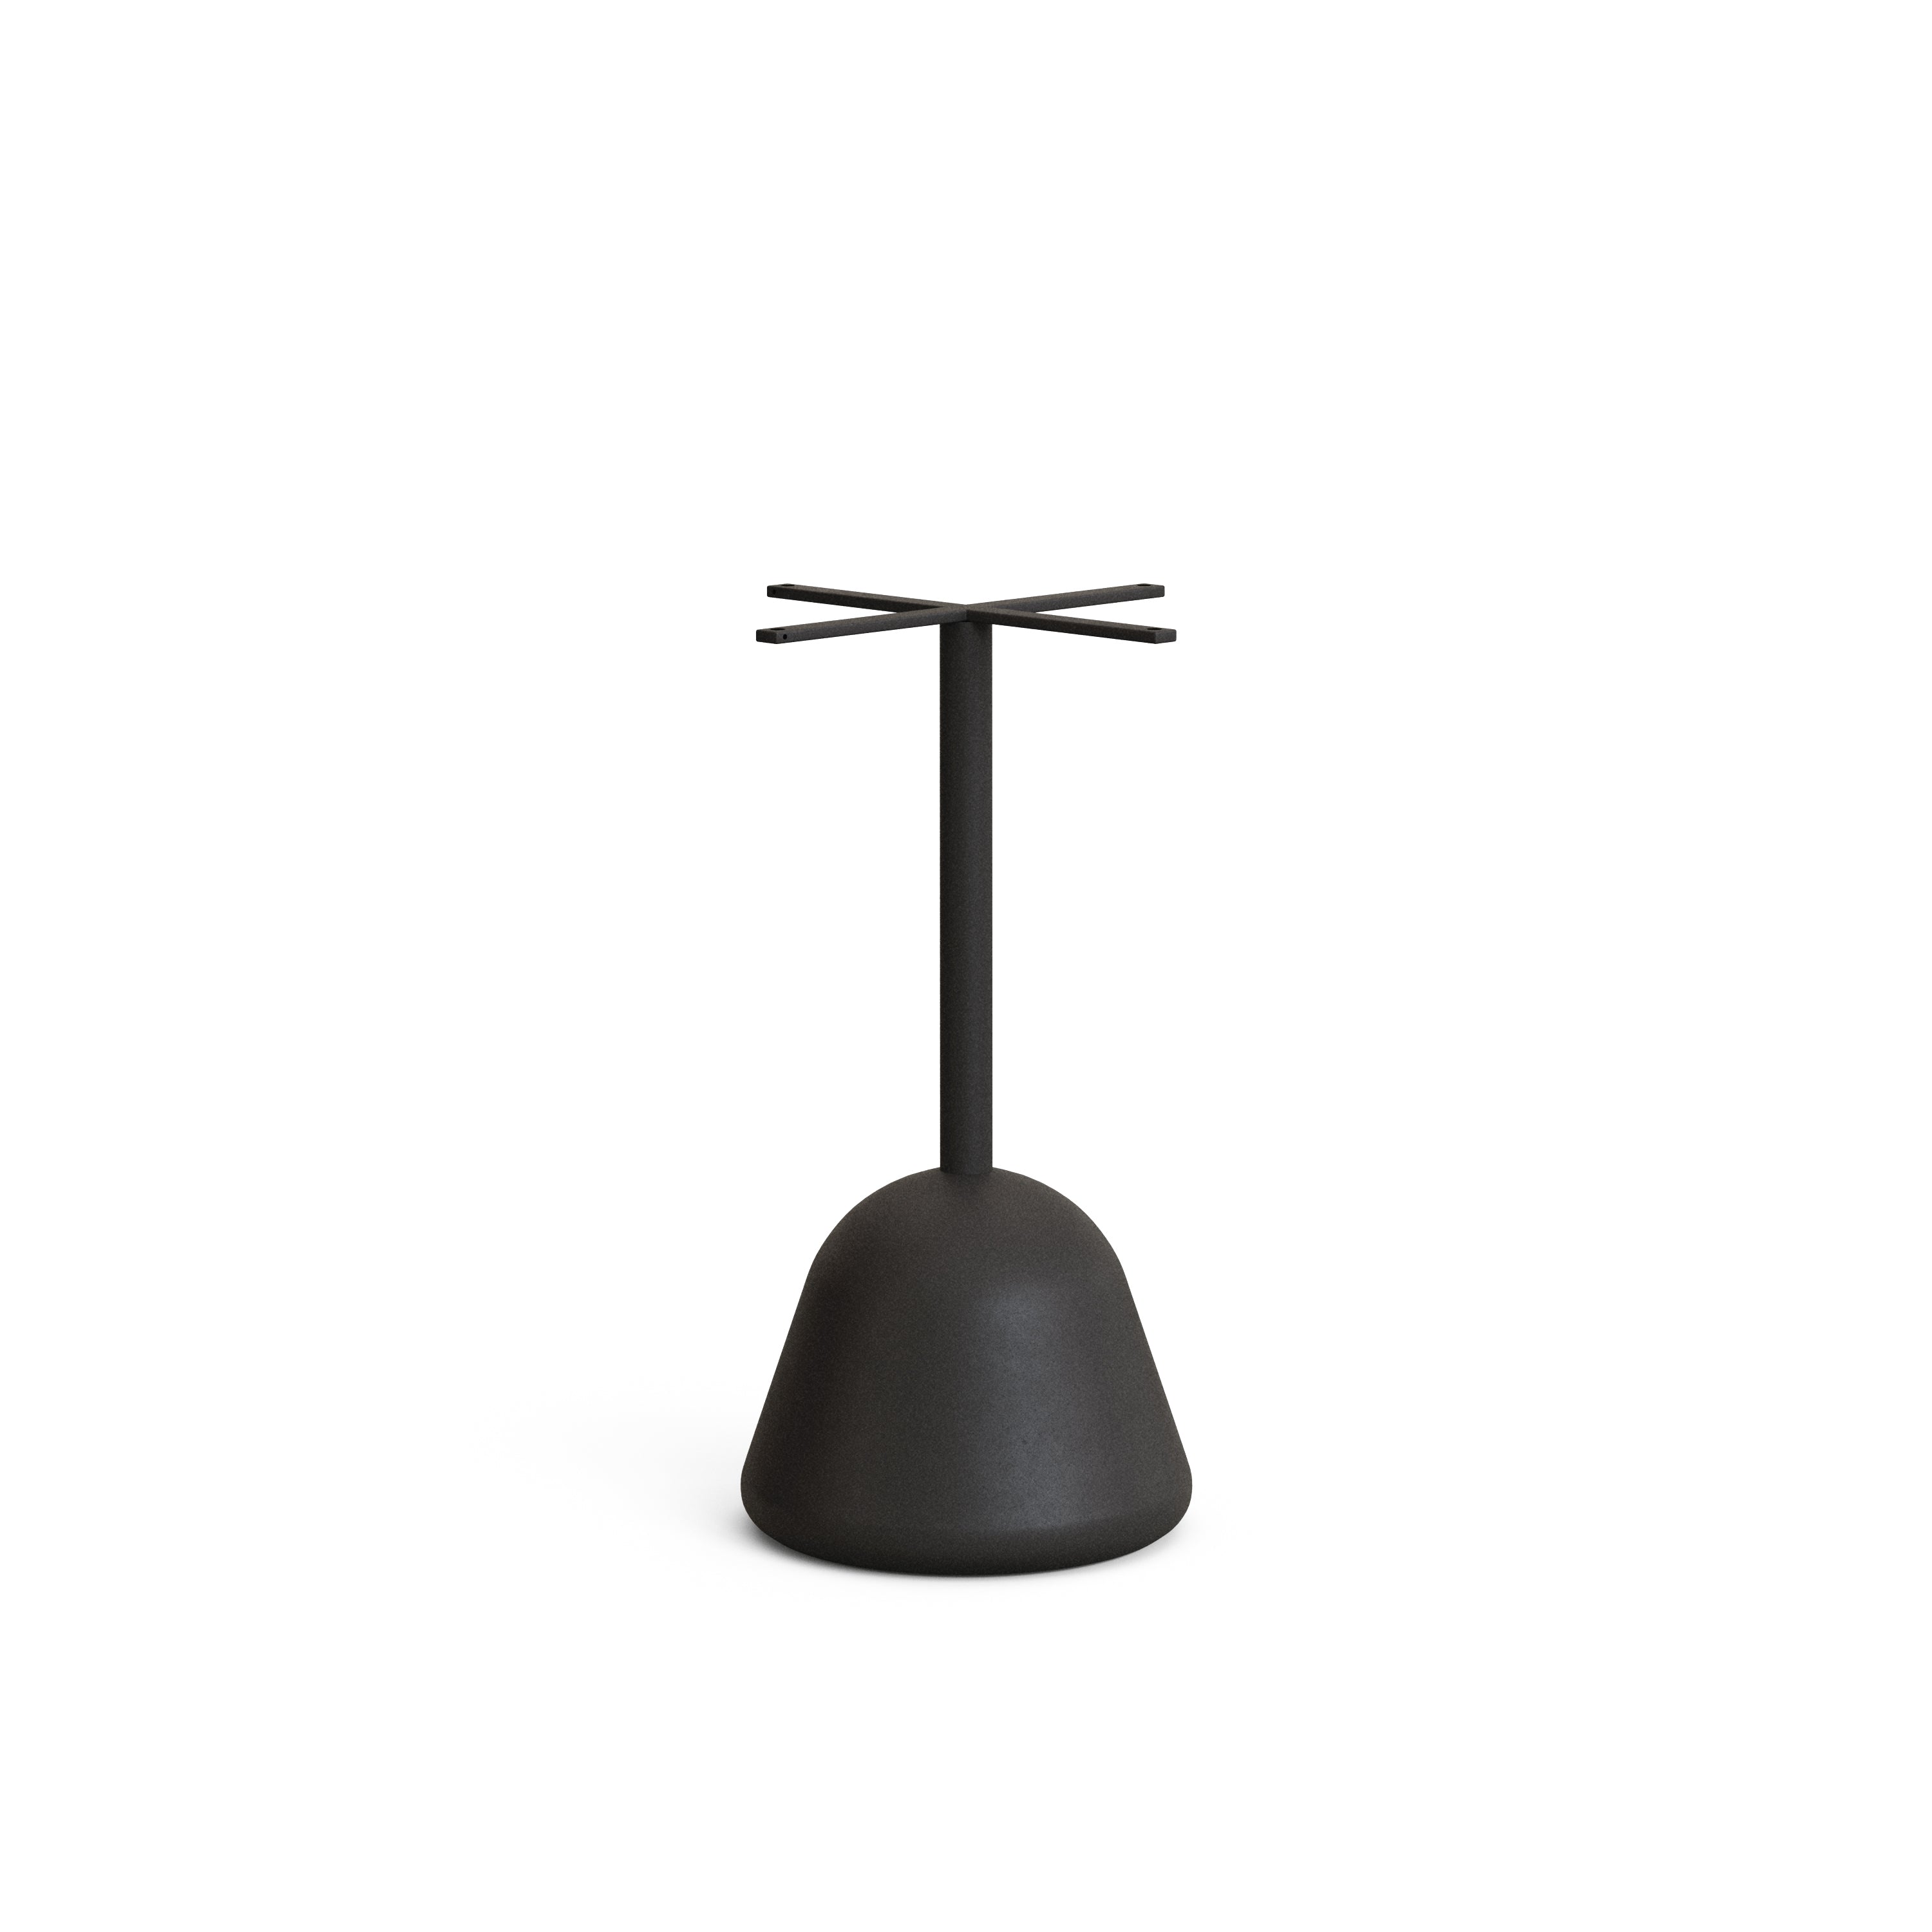 Saura kültéri asztalláb acélból, fekete festett befejezéssel Ø 37 x 75 cm